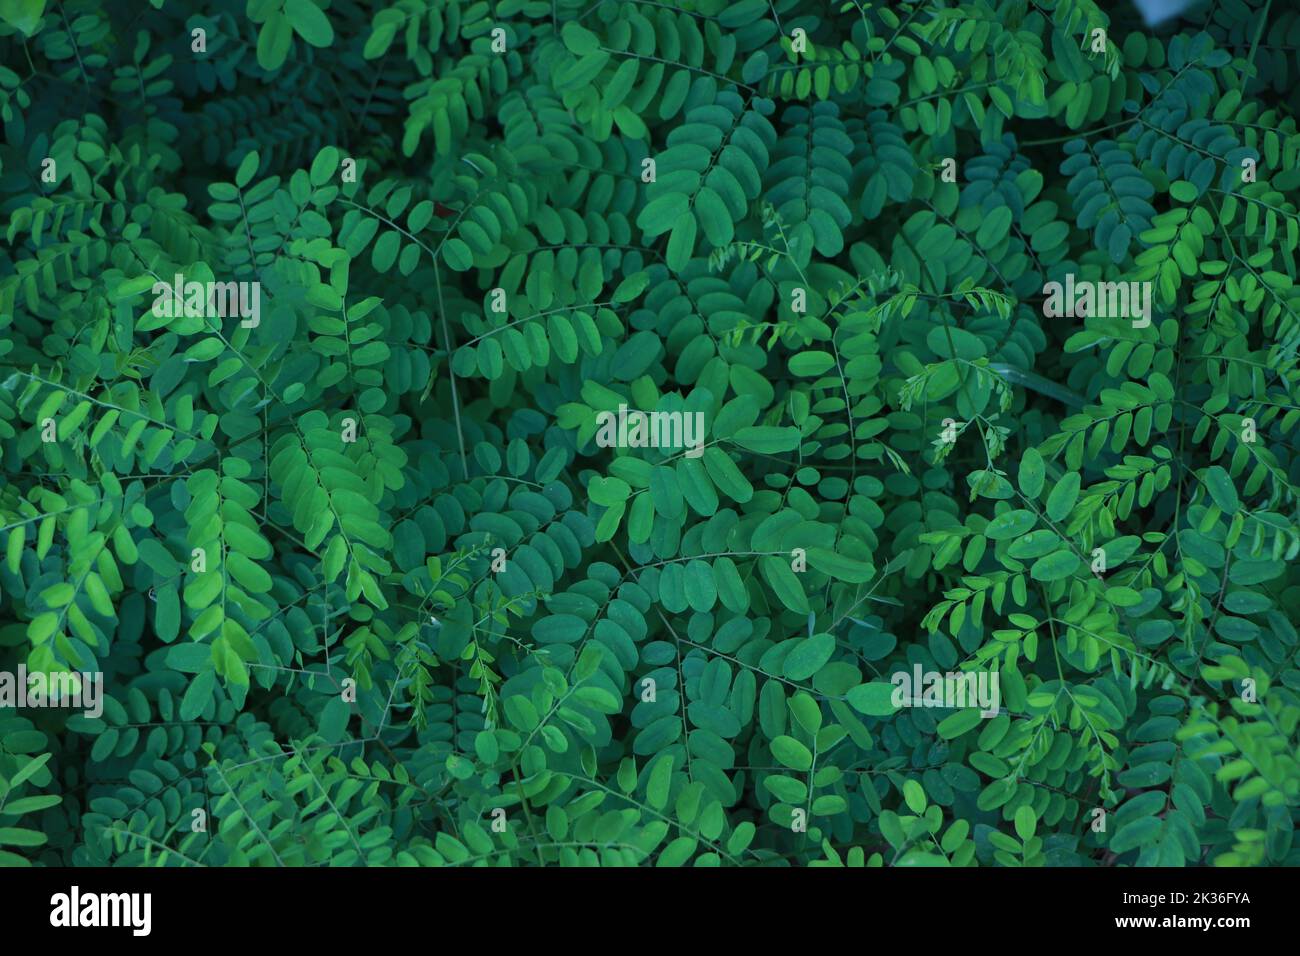 Green leaf dark background on a garden, sustainable resource Stock Photo